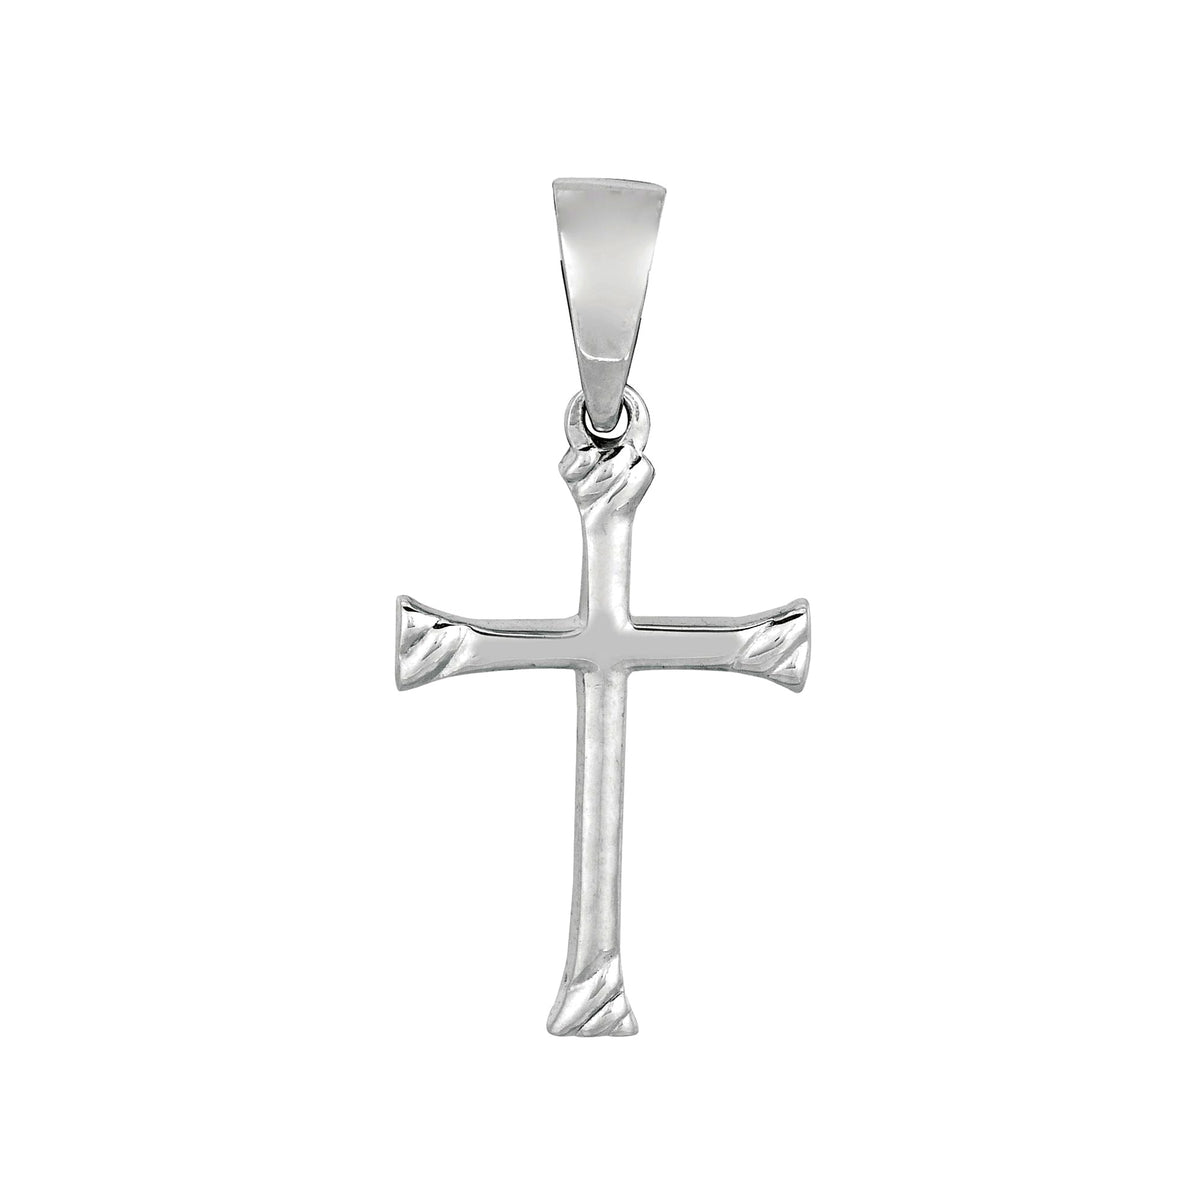 Sterling Silver Cross Pendant, 13 x 20 mm fine designersmykker for menn og kvinner